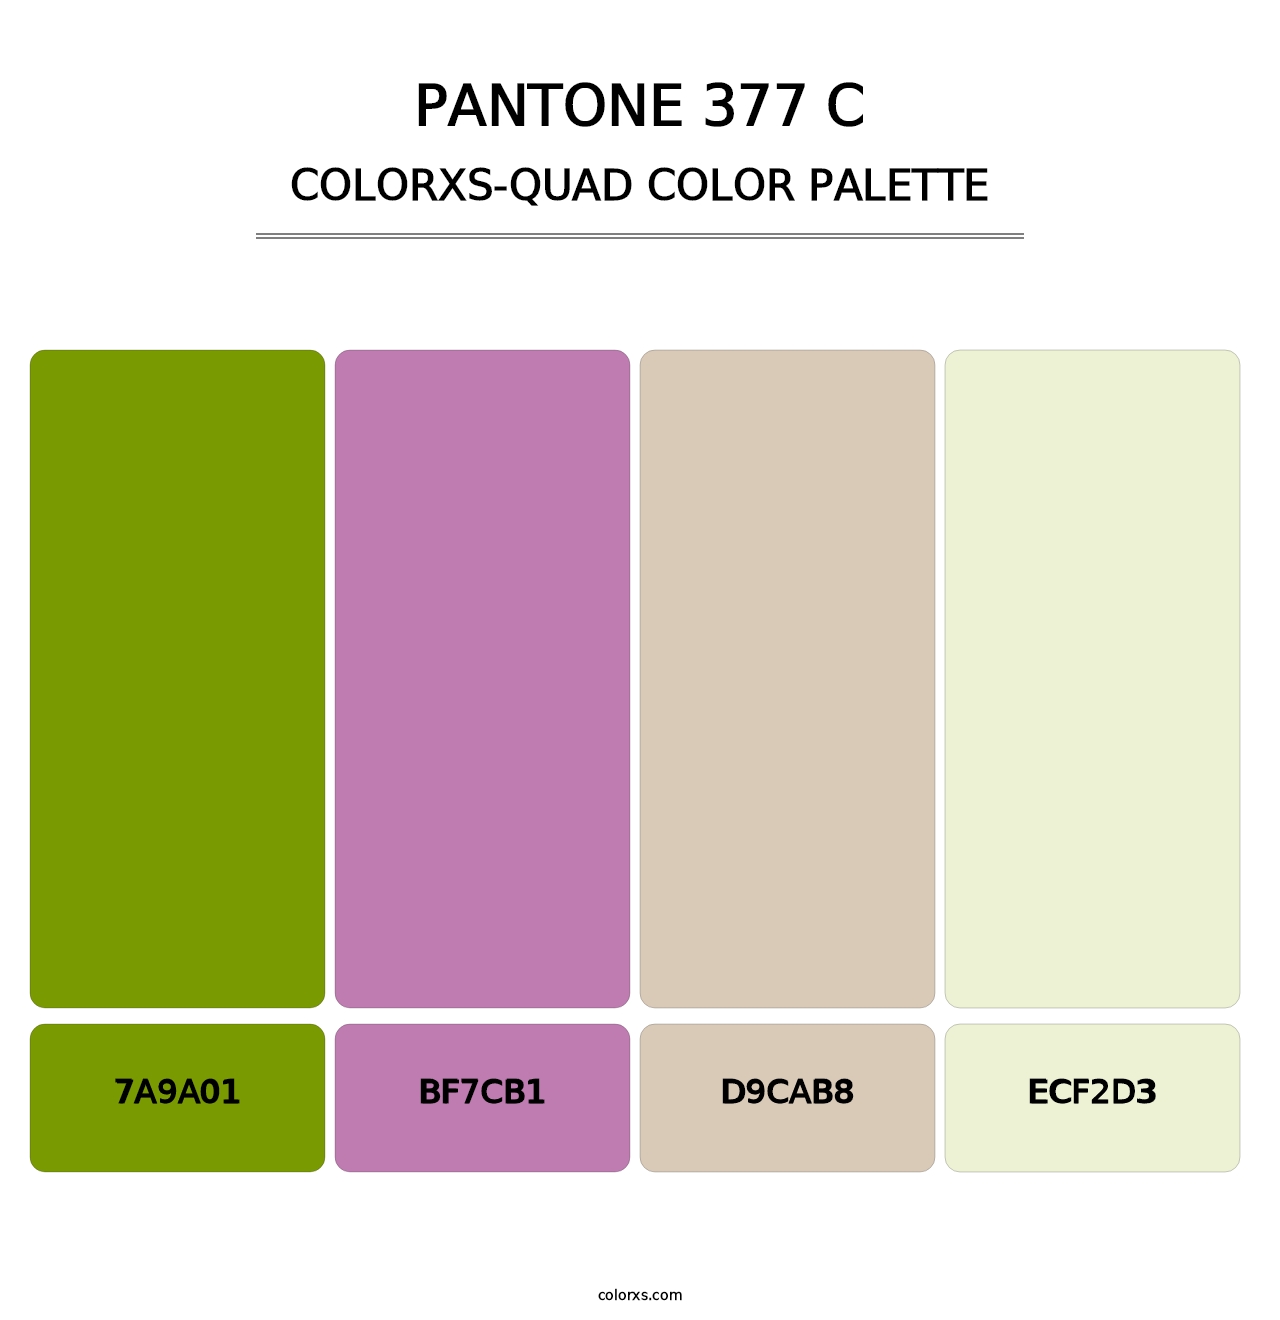 PANTONE 377 C - Colorxs Quad Palette